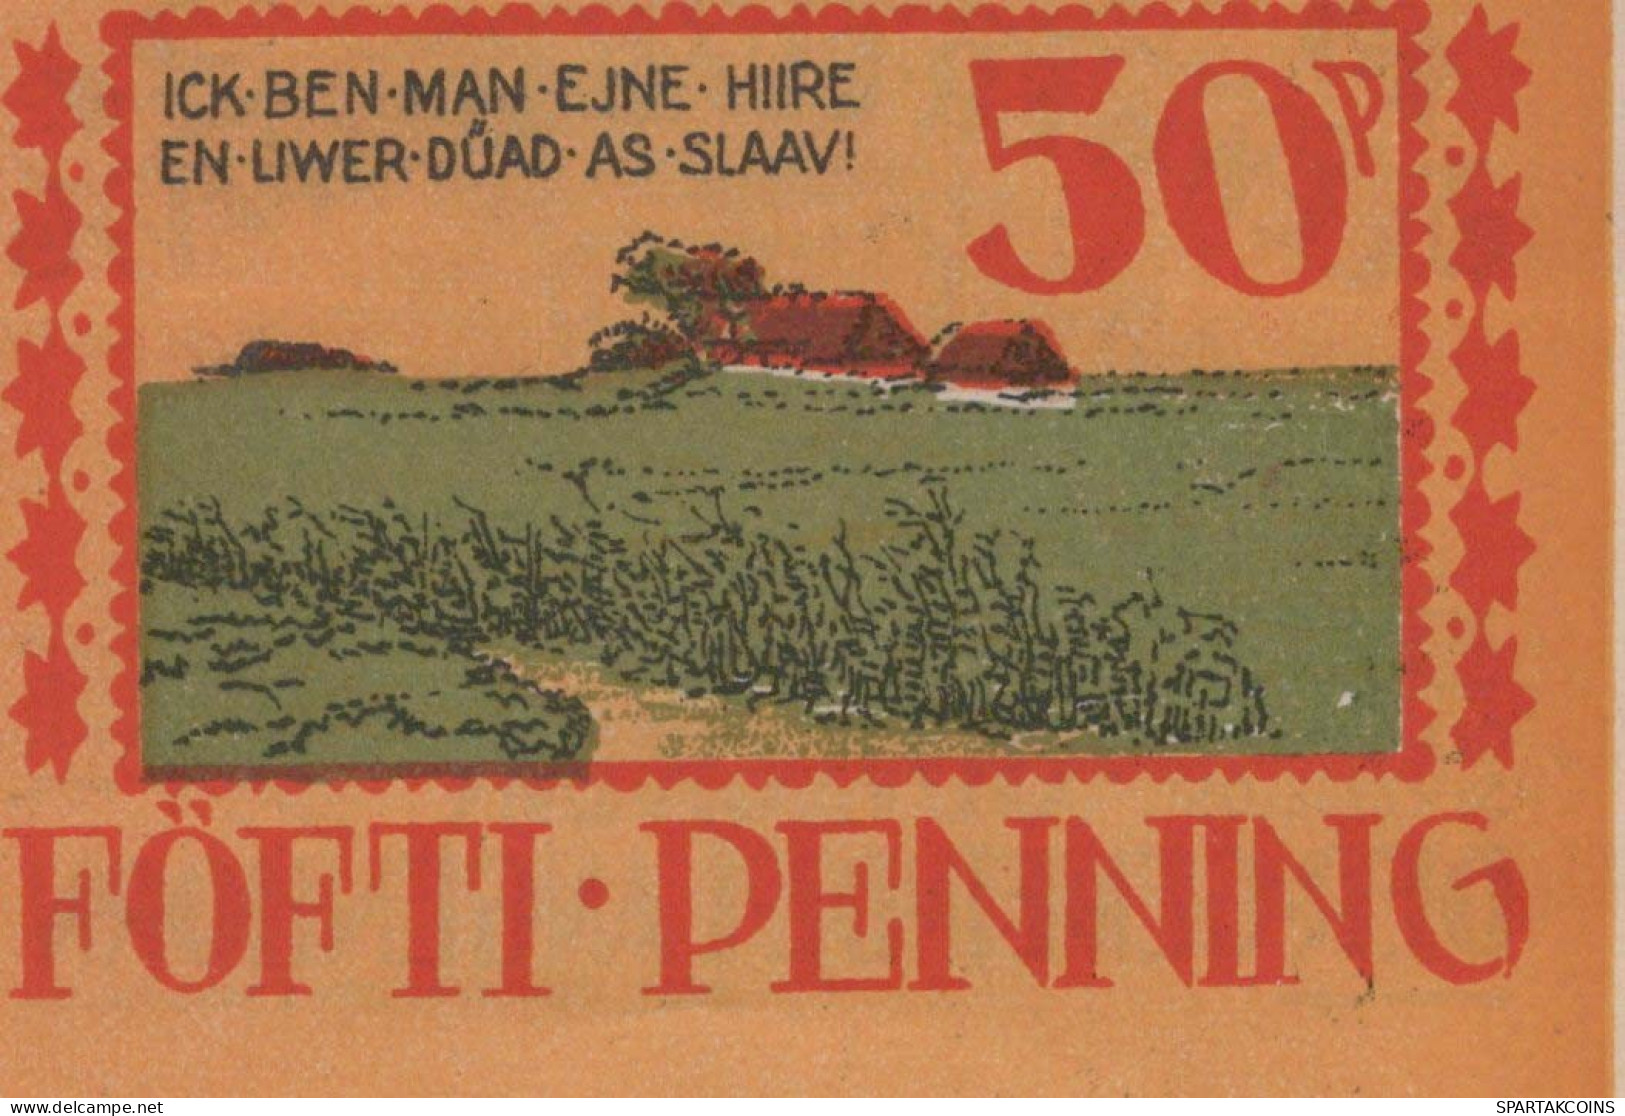 50 PFENNIG 1922 Stadt LANGENHORN IN NORDFRIESLAND UNC DEUTSCHLAND #PH660 - [11] Local Banknote Issues